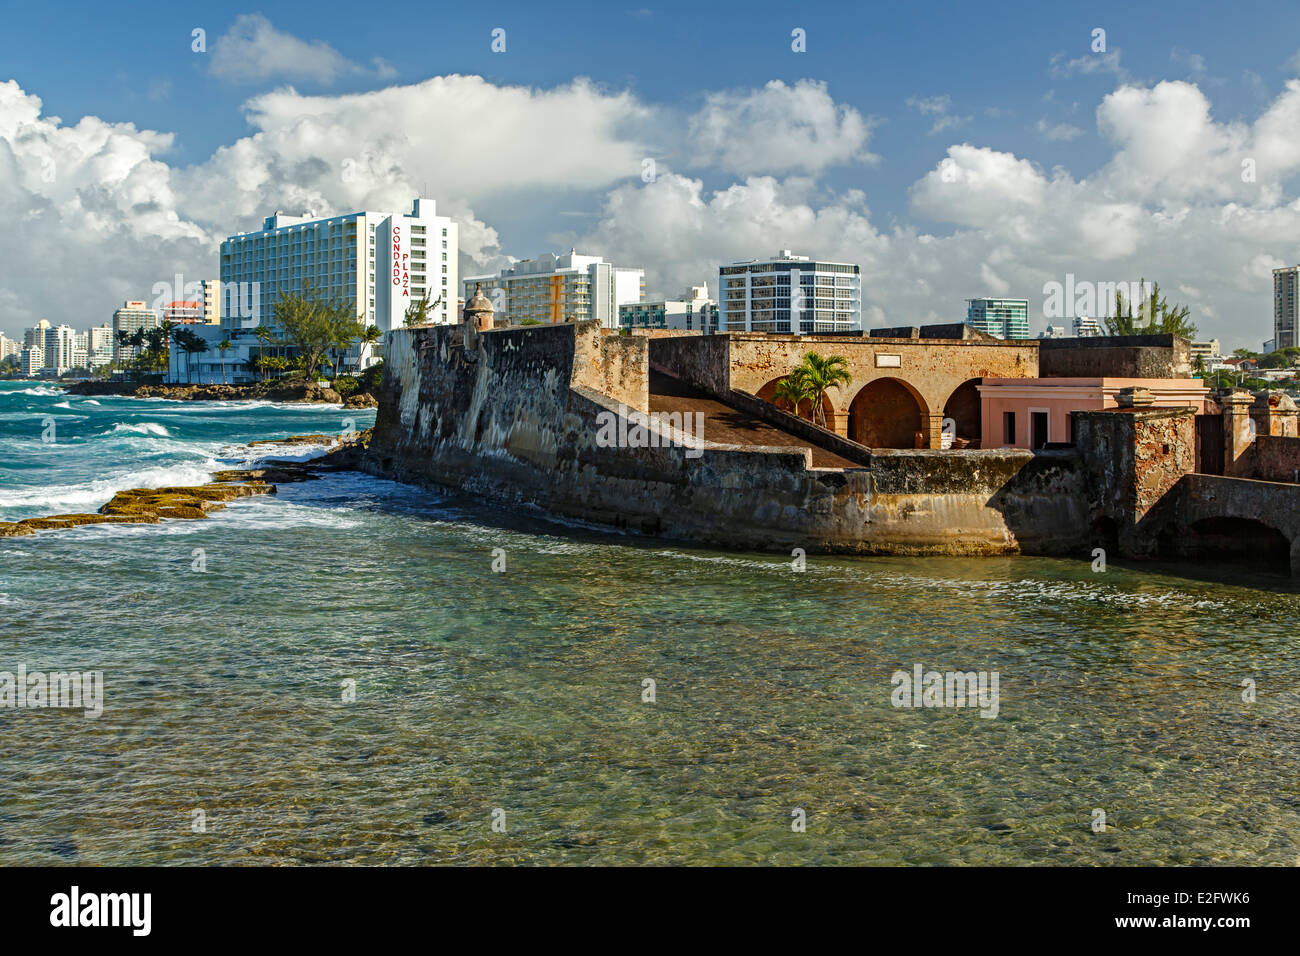 San Geronimo de Boqueron Castle and El Condado skyline, San Juan, Puerto Rico Stock Photo